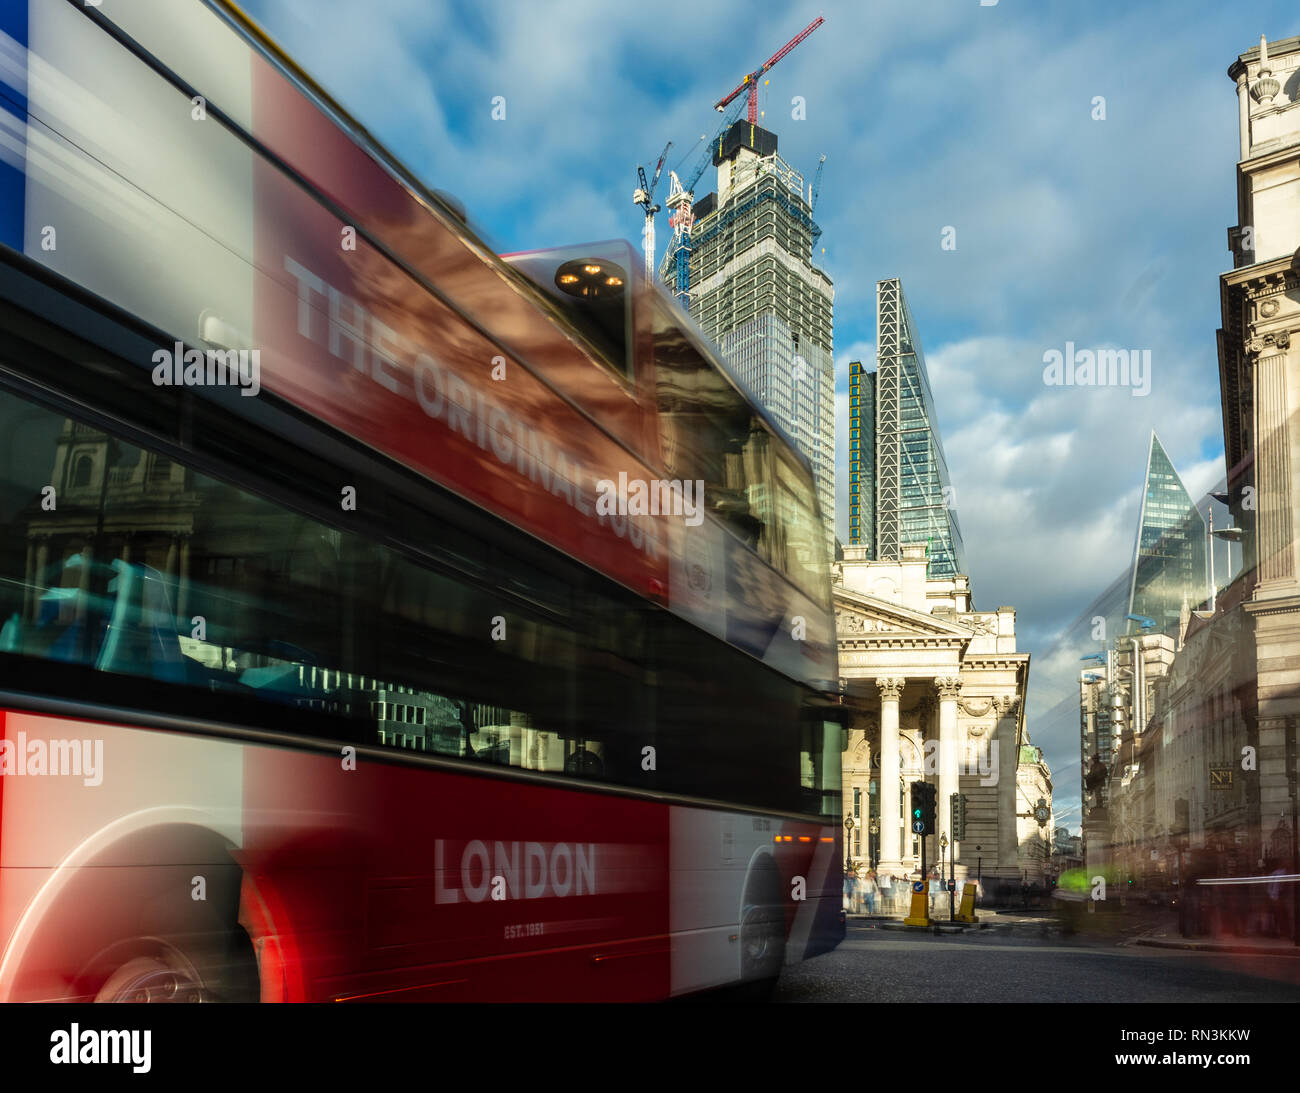 London, England, UK - 14. September 2018: einem oben offenen Doppeldecker Tourbus geht durch die besetzte Bank Kreuzung mit der Royal Exchange Aufbau einer Stockfoto